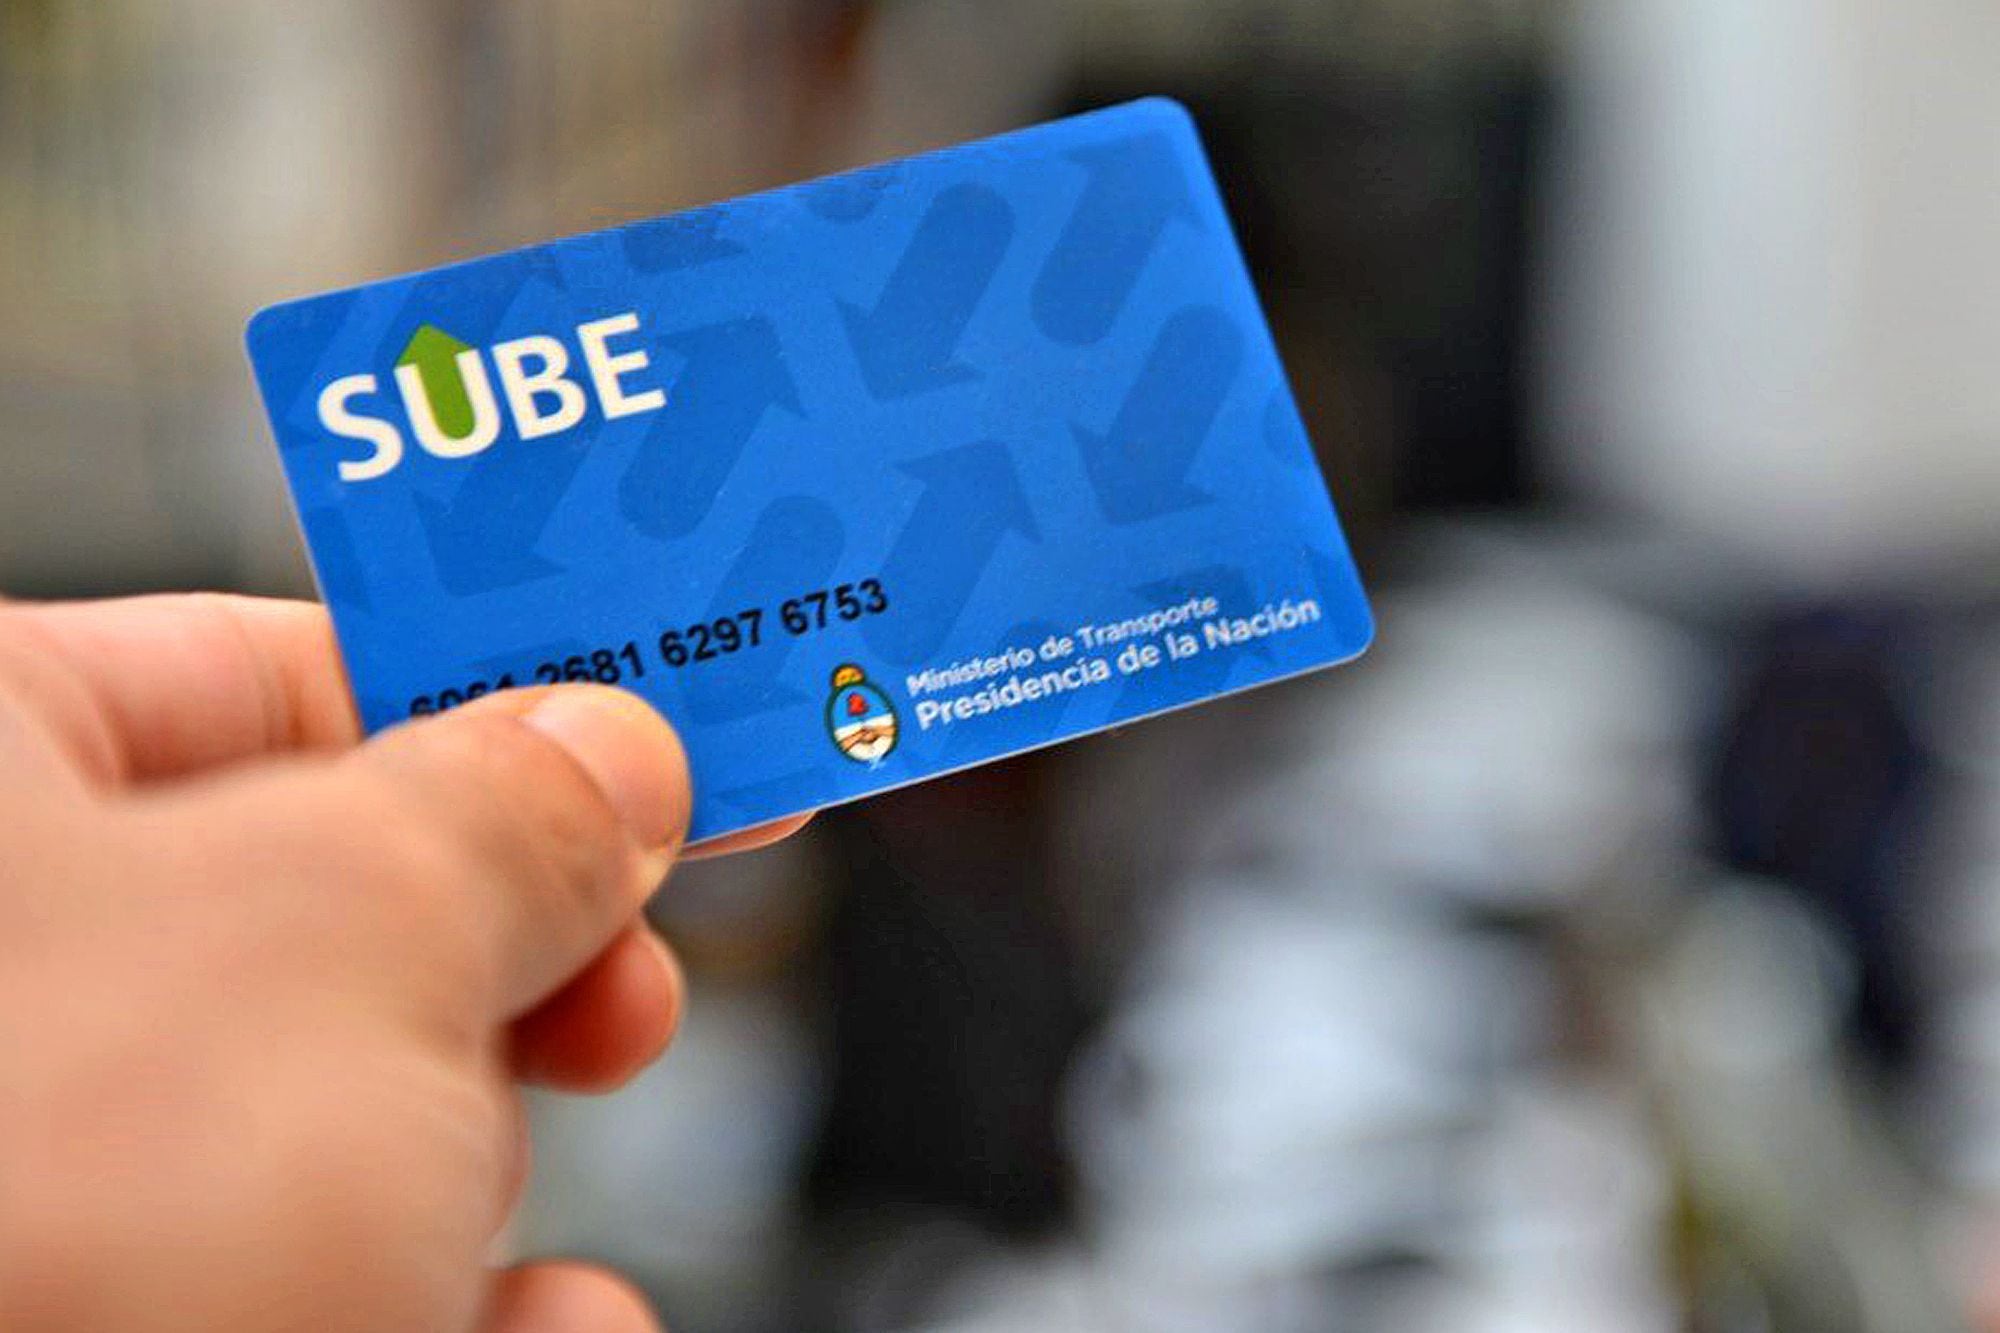 Los usuarios de SUBE podrán realizar múltiples trámites de manera online si tienen sus tarjetas registradas